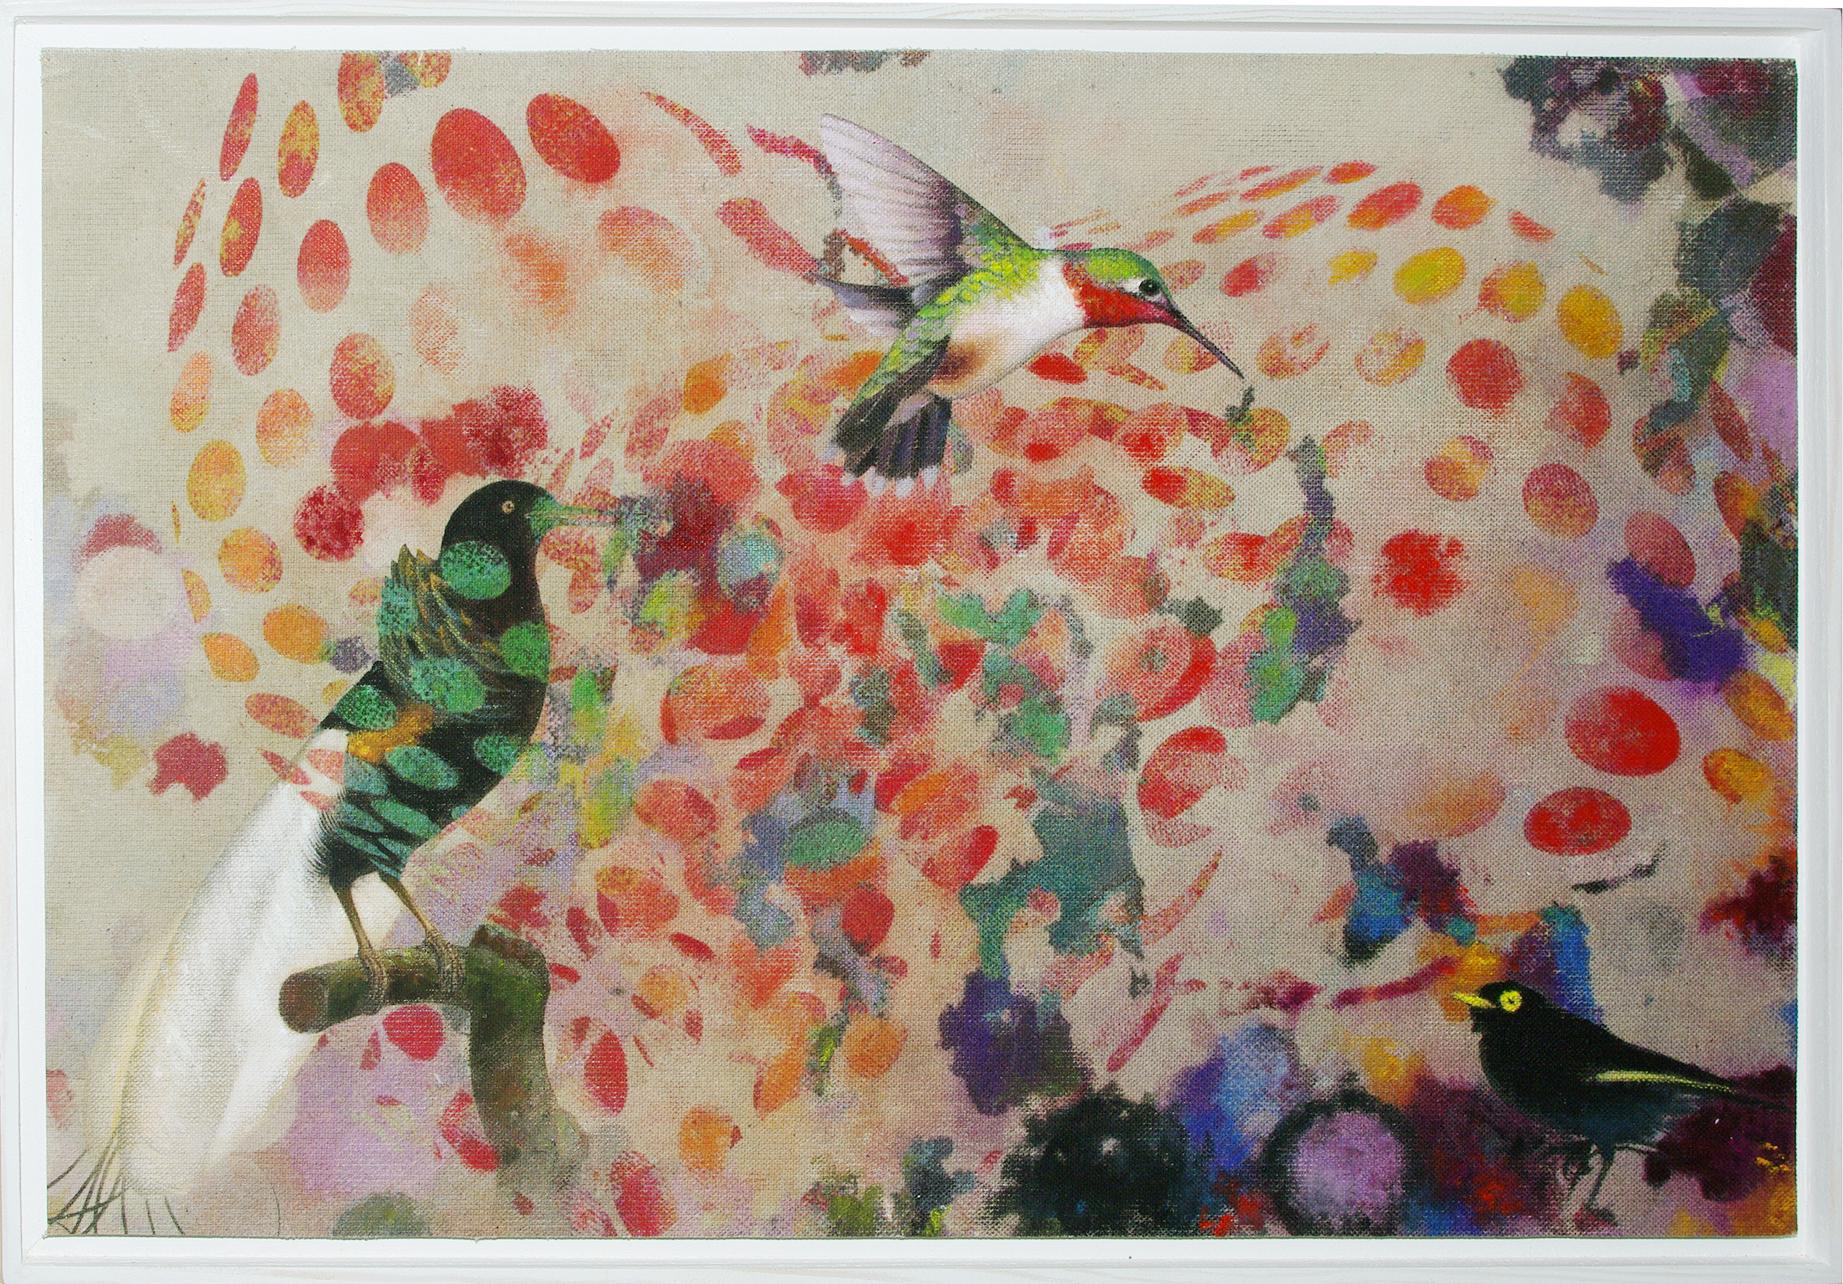 Oiseaux 019 - Techniques mixtes, contemporains, animaux, peinture, acrylique, abstrait - Mixed Media Art de Francisco Nicolás